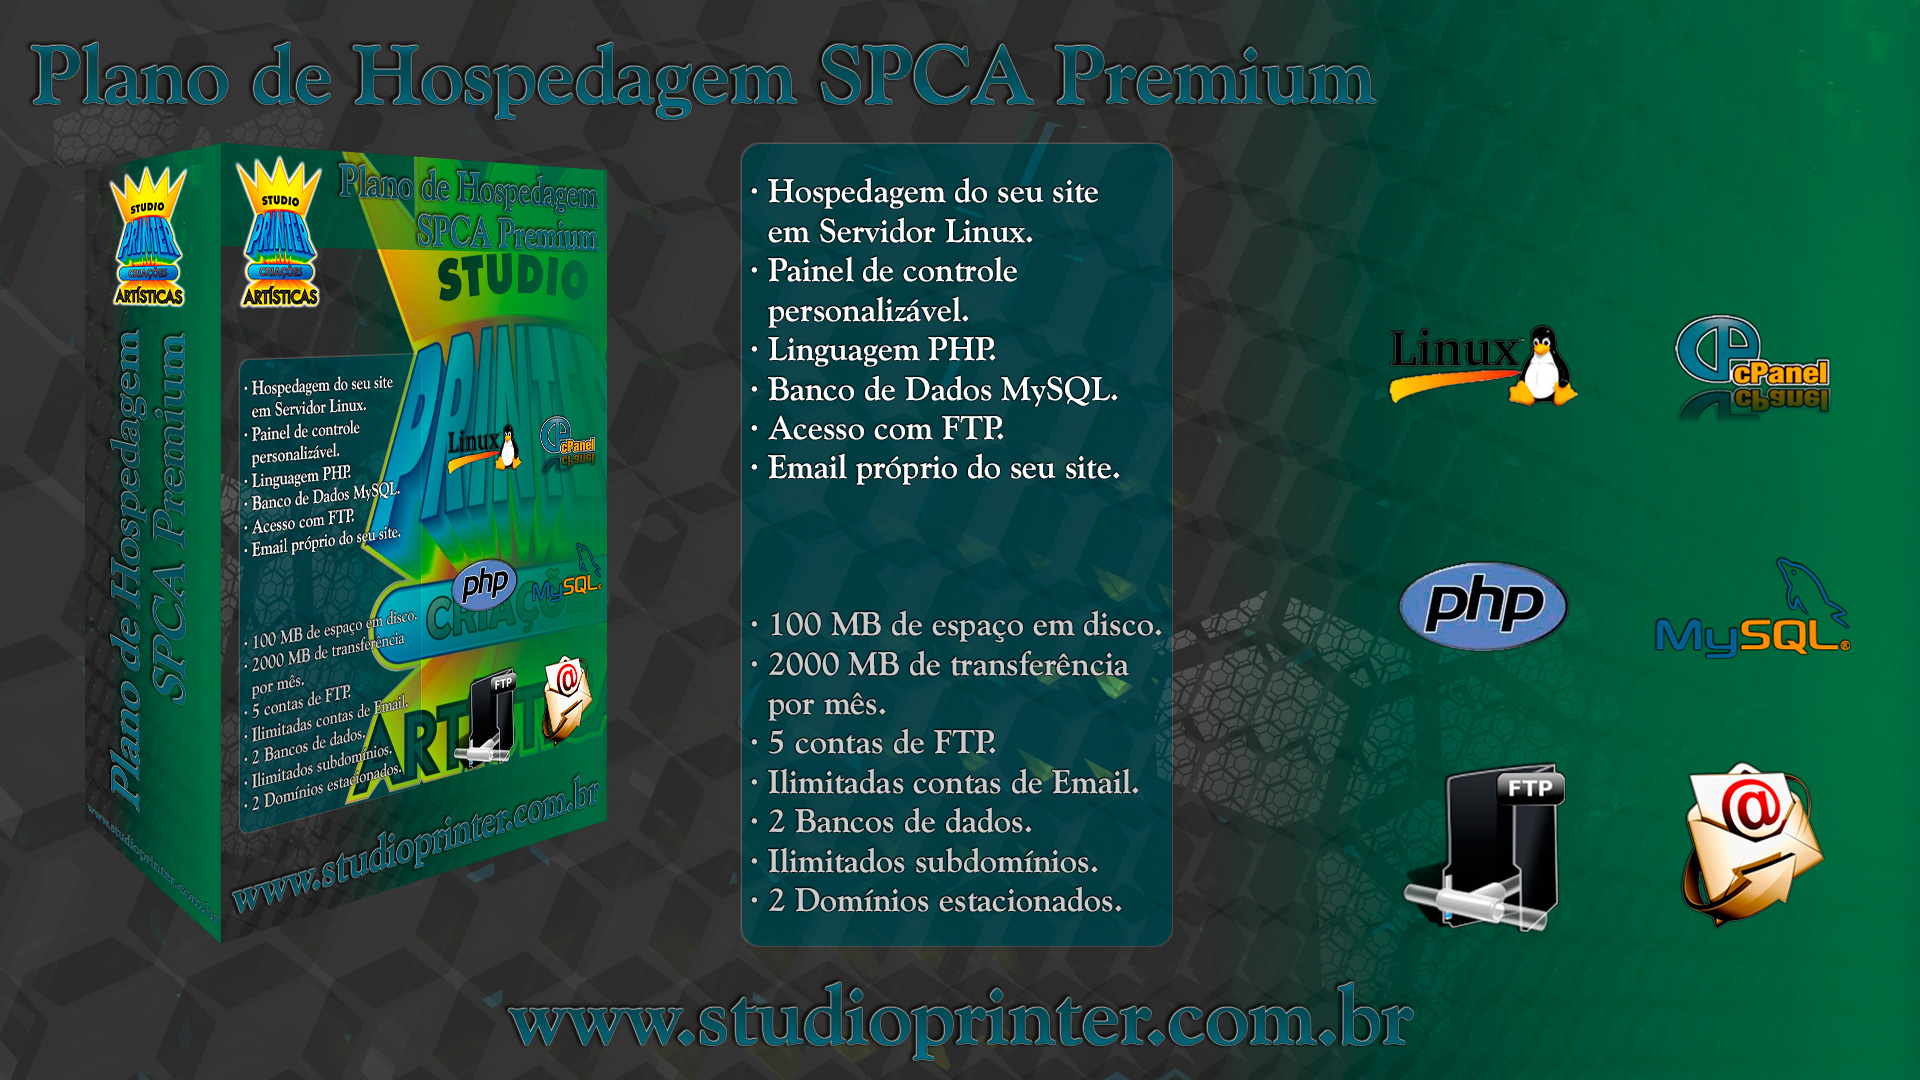 SPCA Premium